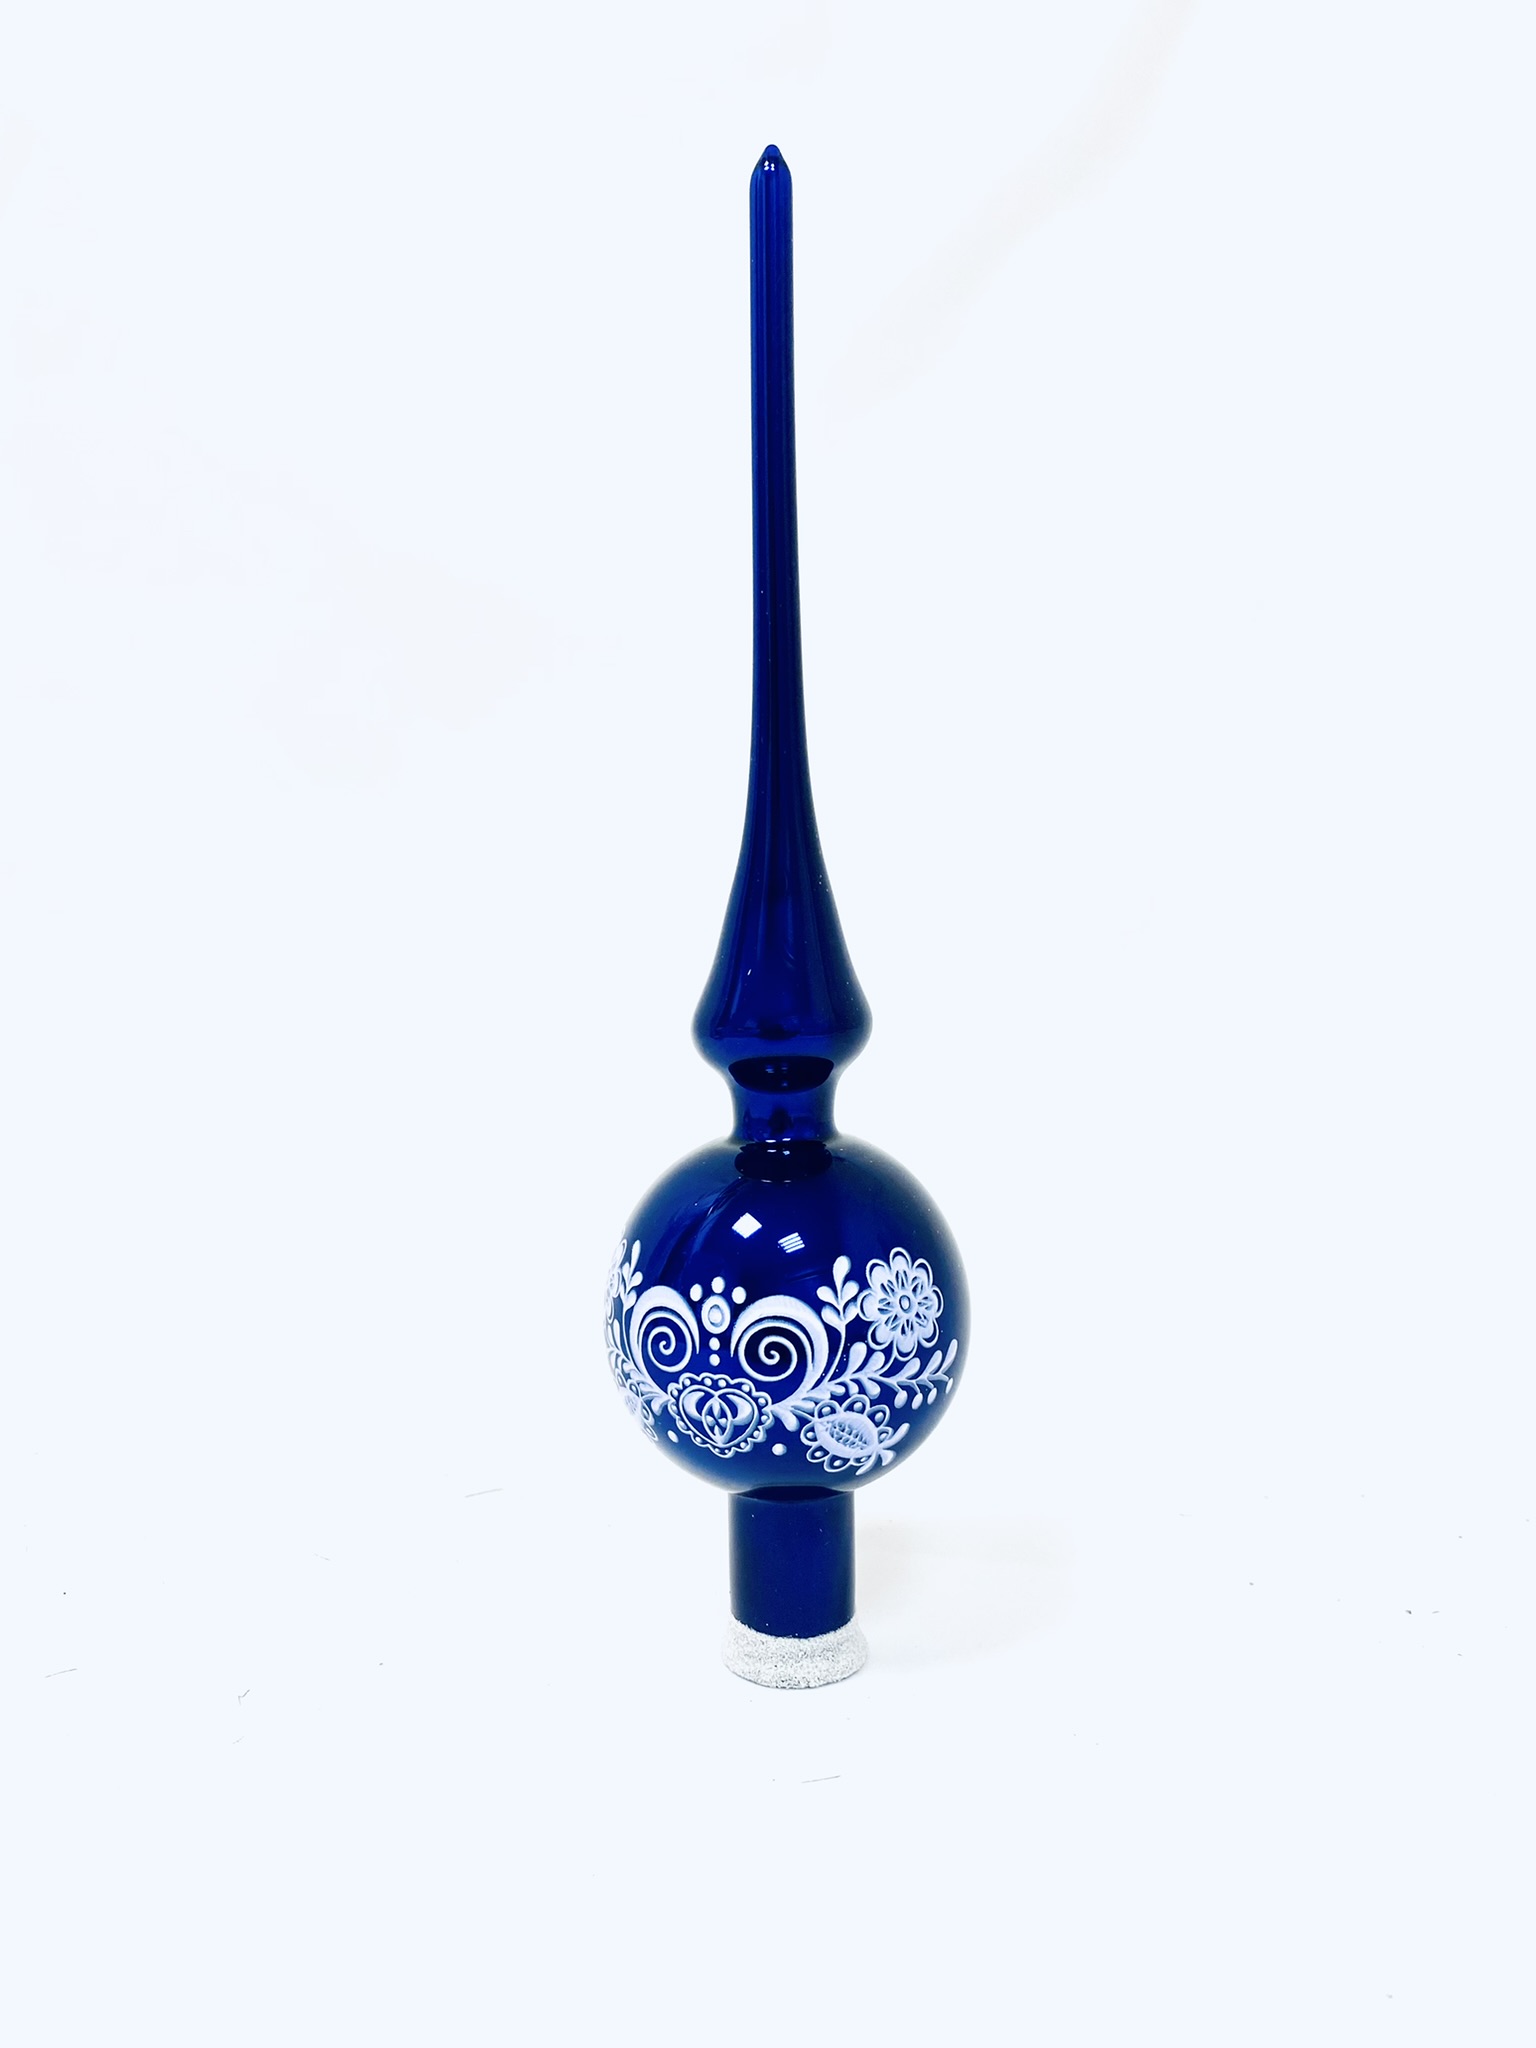 Irisa Vánoční ozdoby ALŽBĚTA modrá špice s dekorem cibulák 30 cm, 1 ks Balení: 1ks, Barva: modrá, Velikost: 30 cm